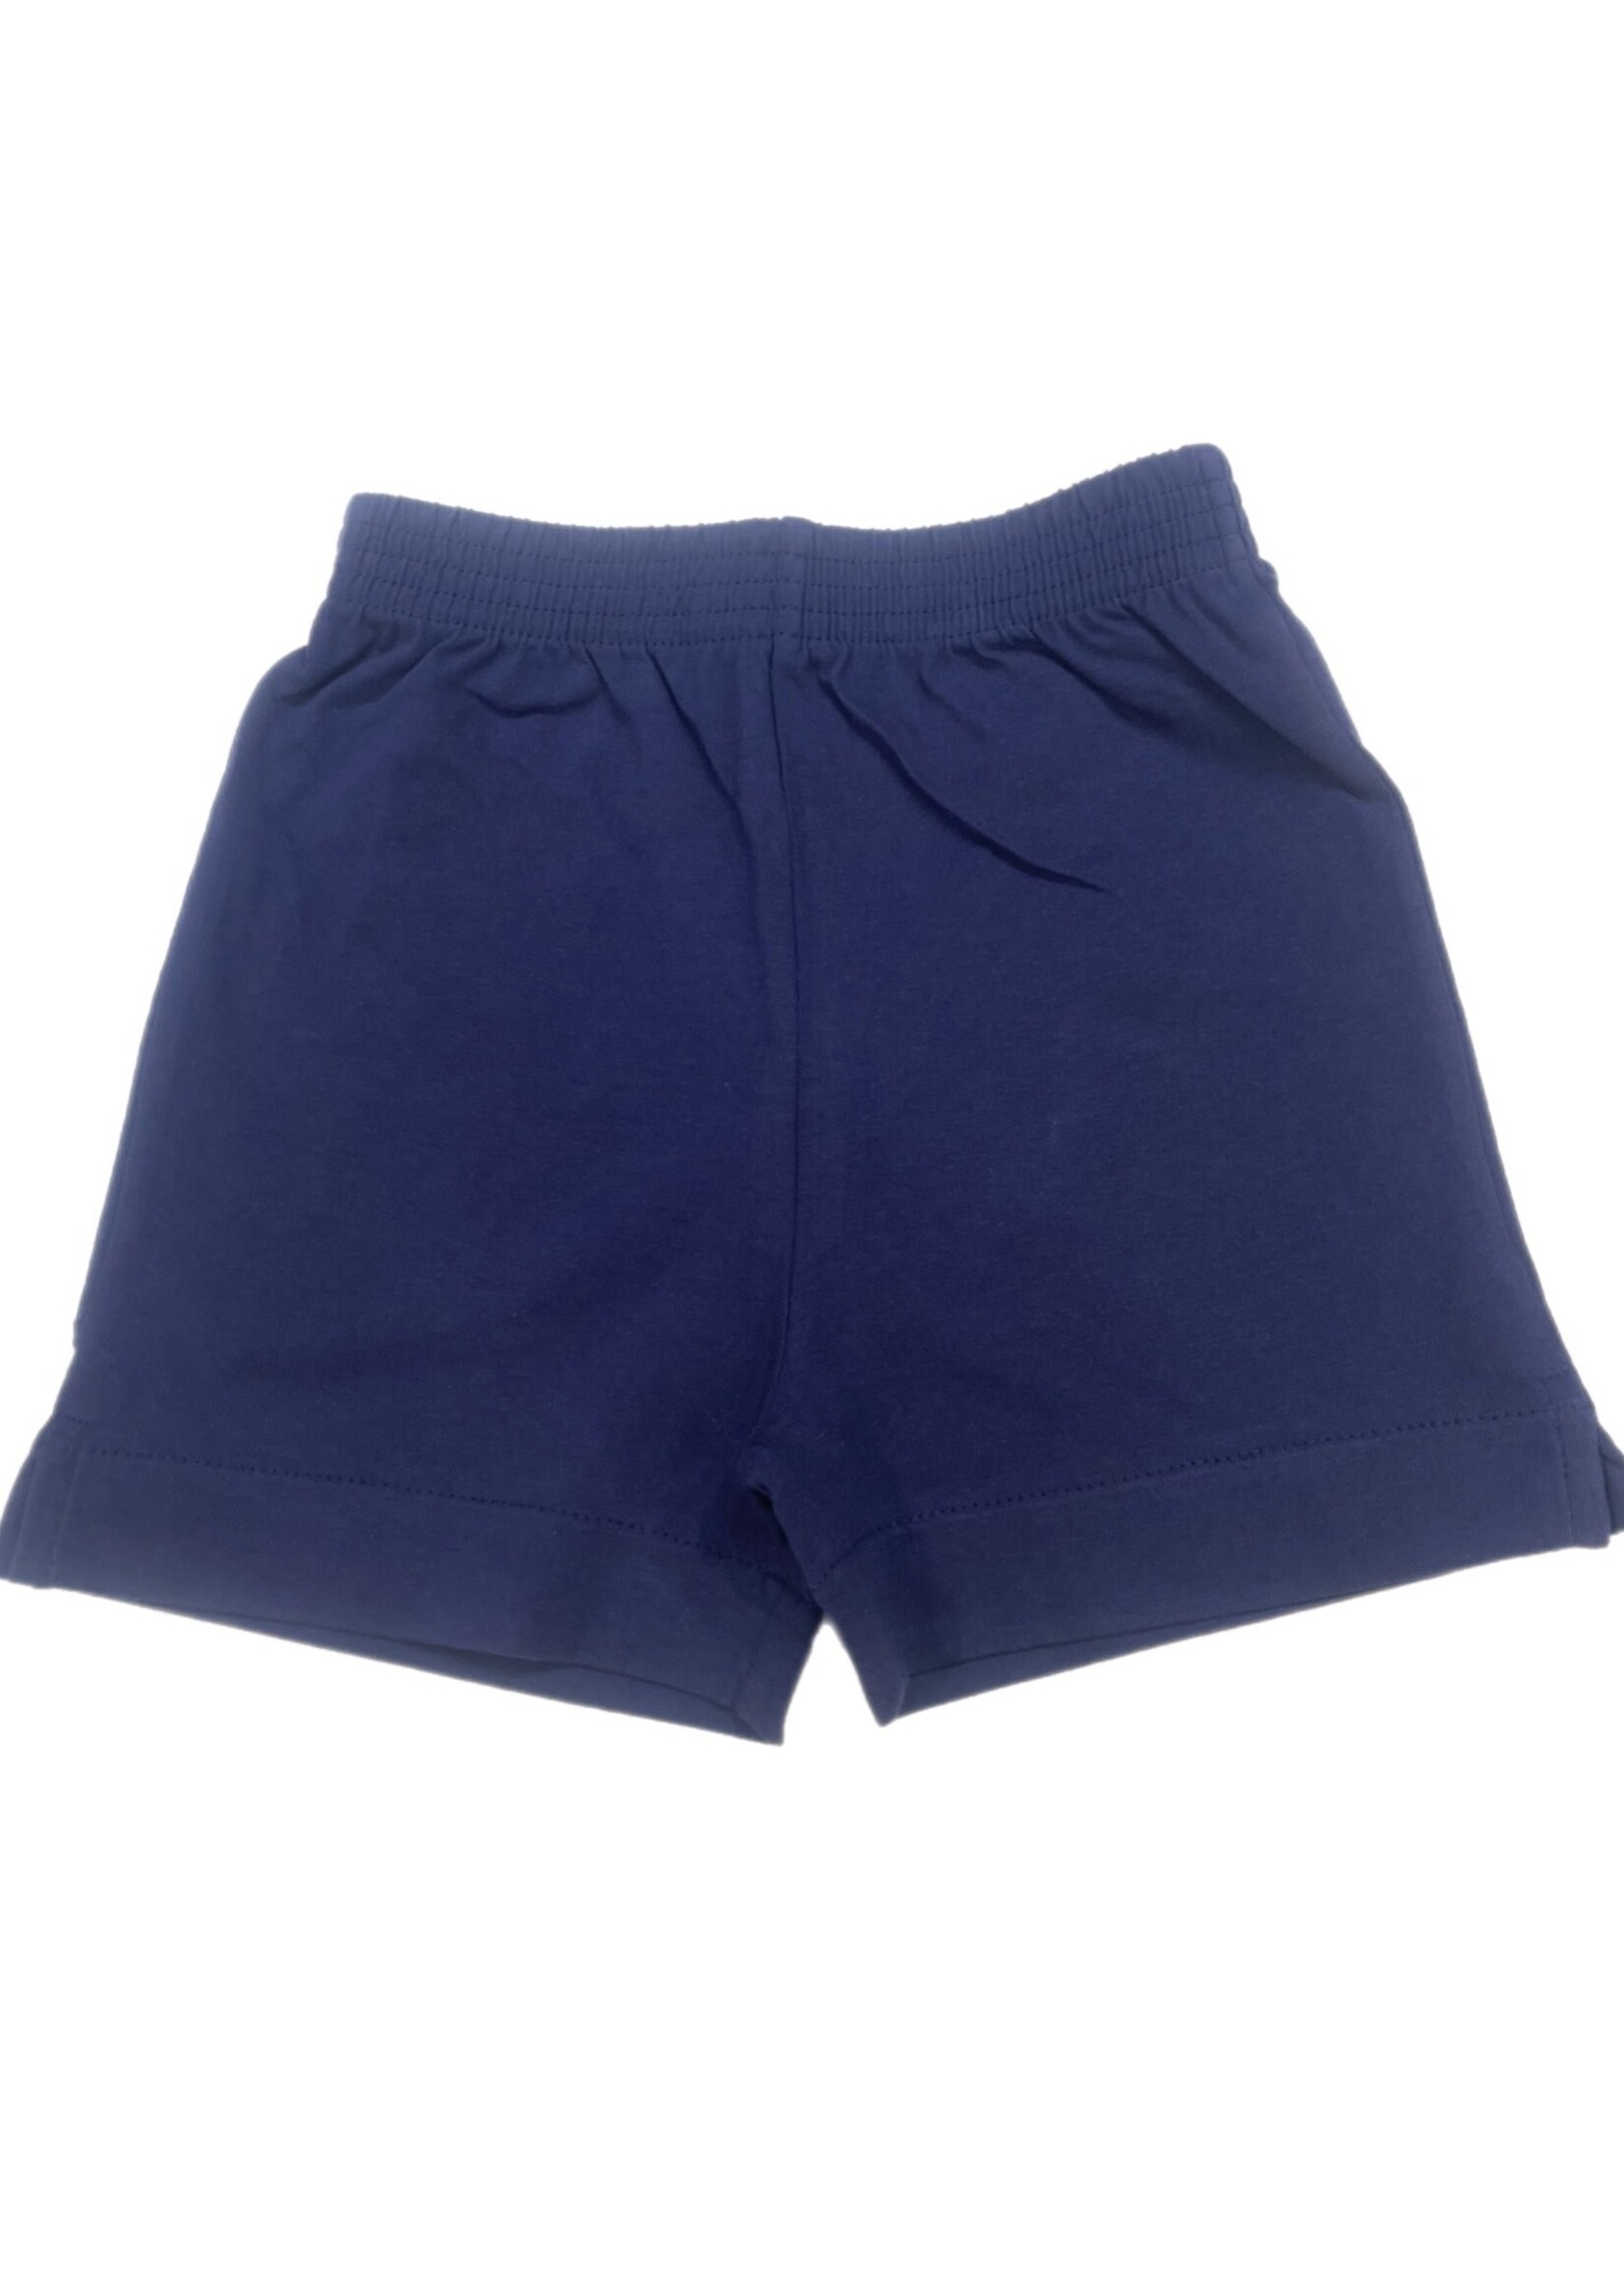 Luigi Kids Navy Knit Shorts